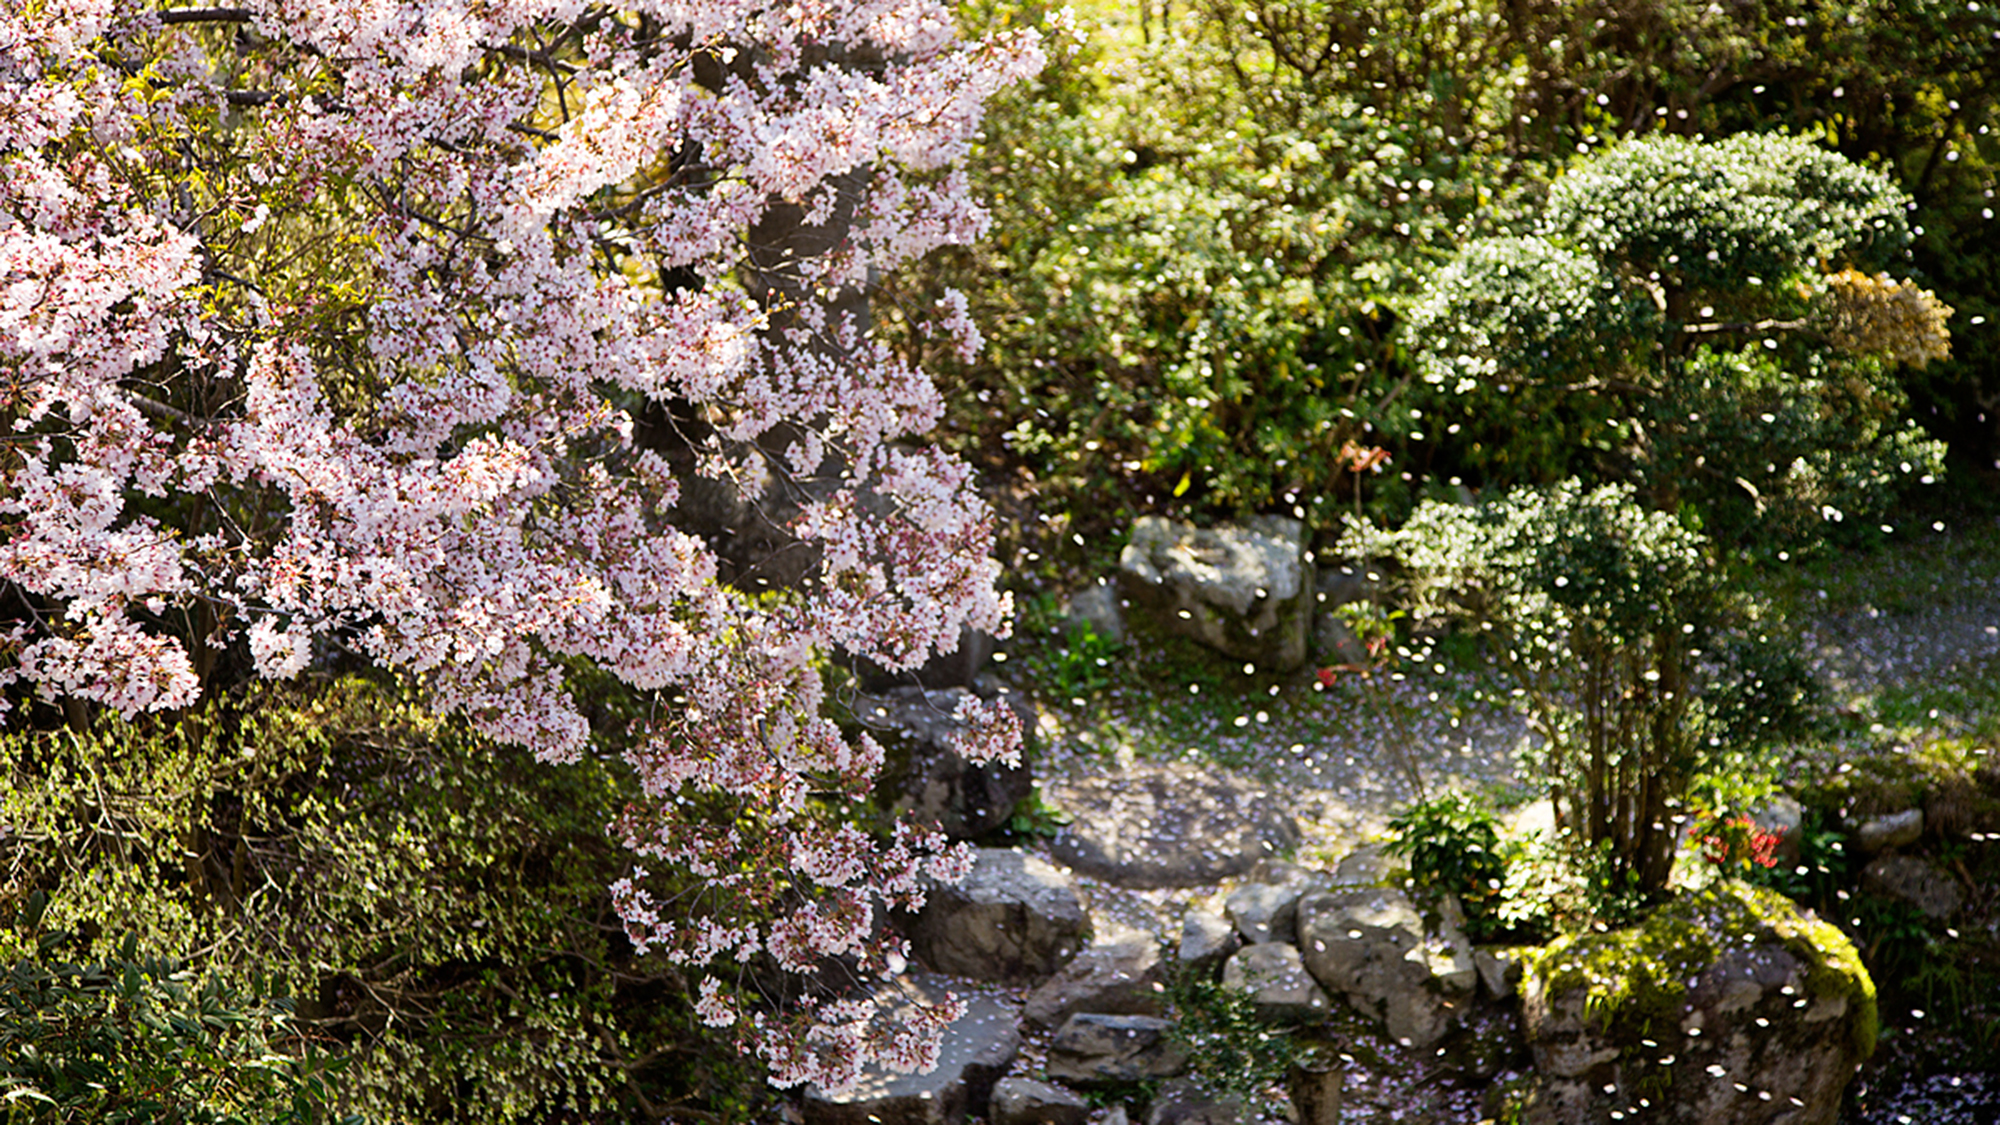 【日本庭園】桜の花言葉は“精神の美”強く美しい桜に心を癒される